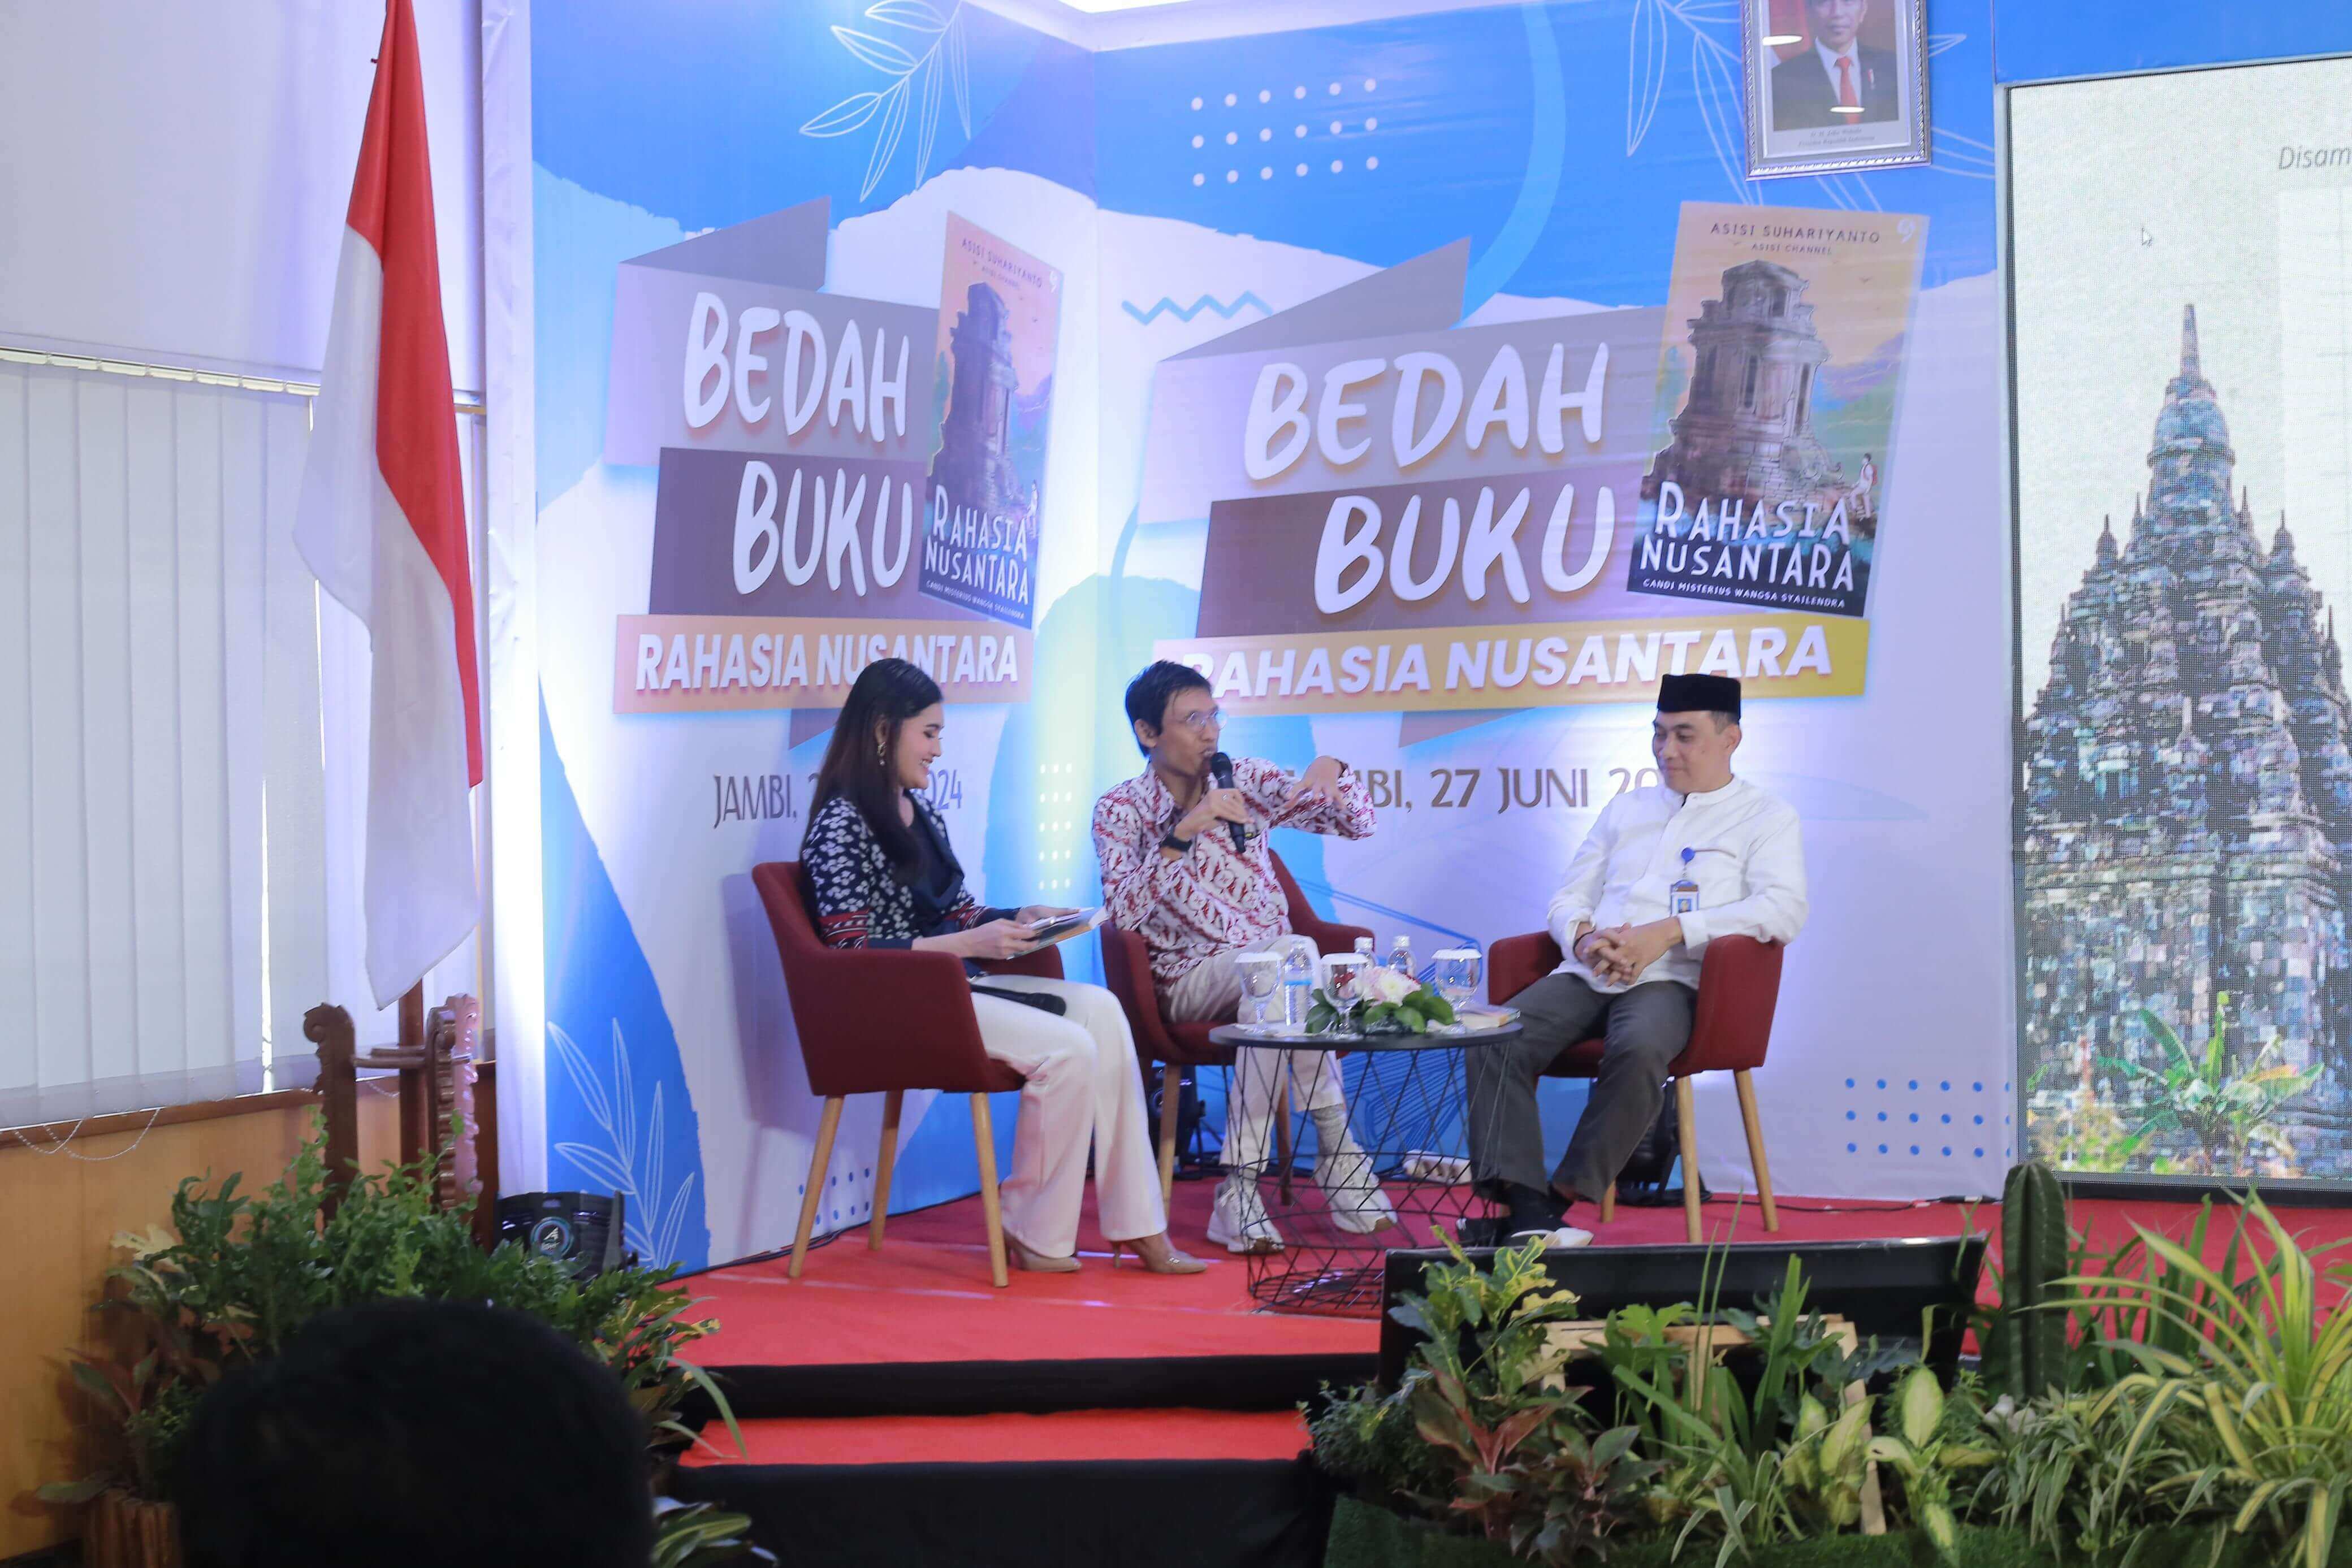 Bank Indonesia Jambi Gelar Bedah Buku Rahasia Nusantara, Mengulik Sejarah Candi Candi di Indonesia 